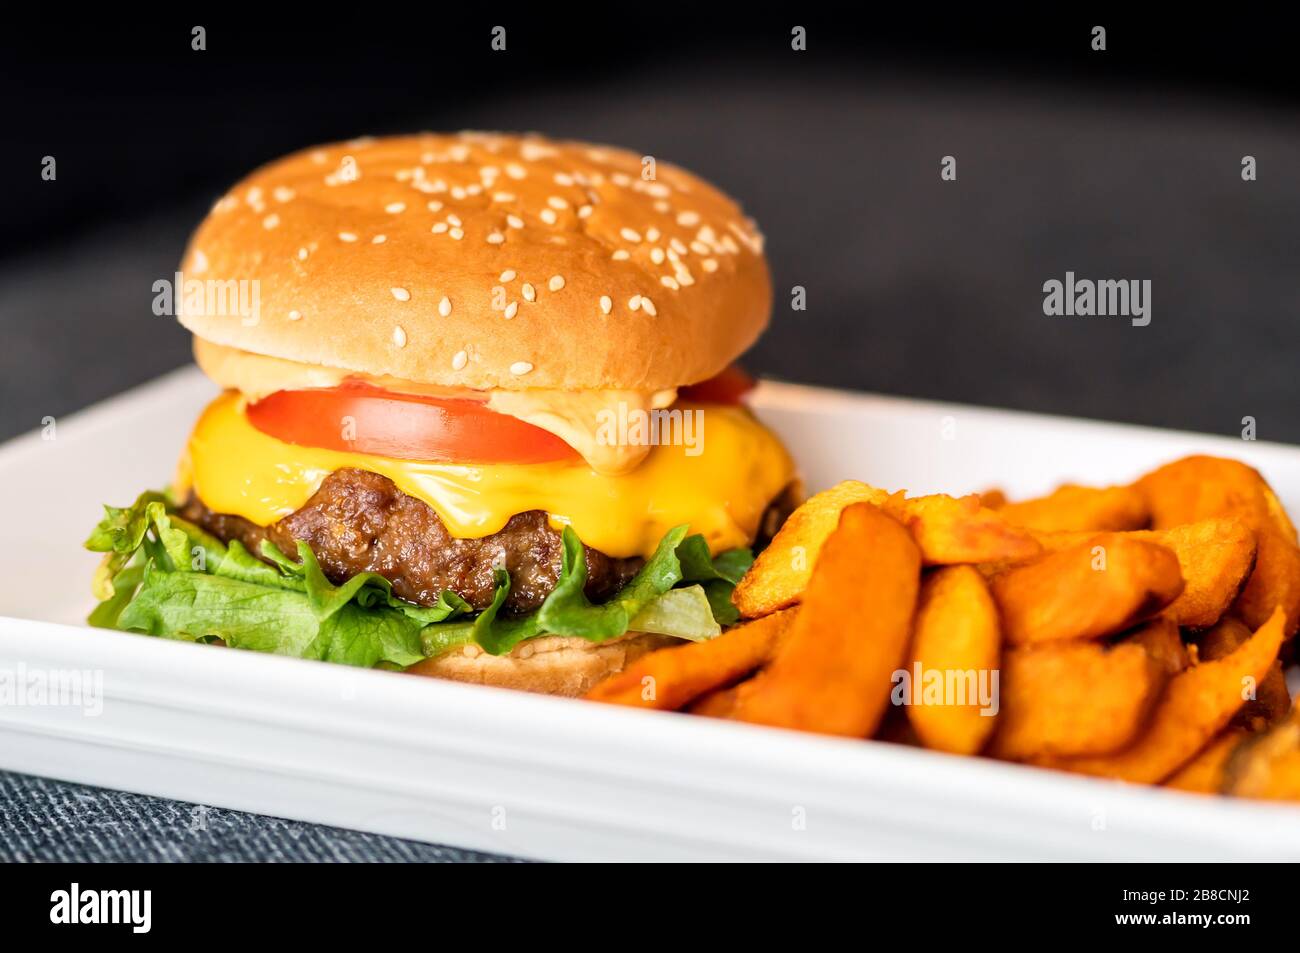 Hamburger repas sur plaque. Délicieux hamburger avec du bœuf juteux, du cheddar fondu servi avec des frites de patate douce croustillantes. Cuisine maison. Banque D'Images